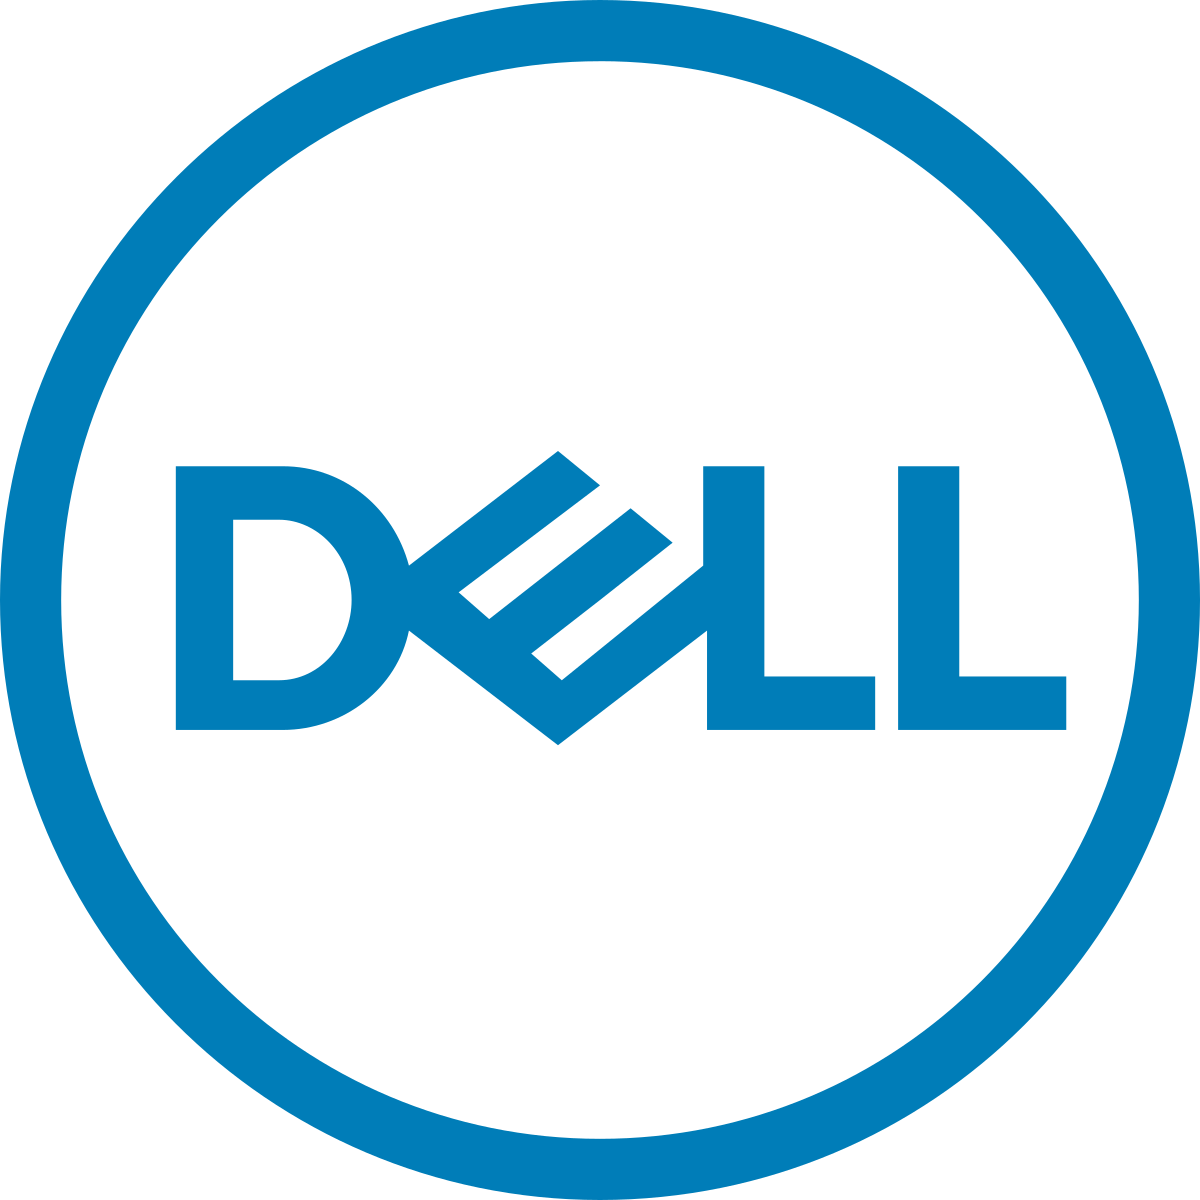 Dell_logo_2016.svg (1)